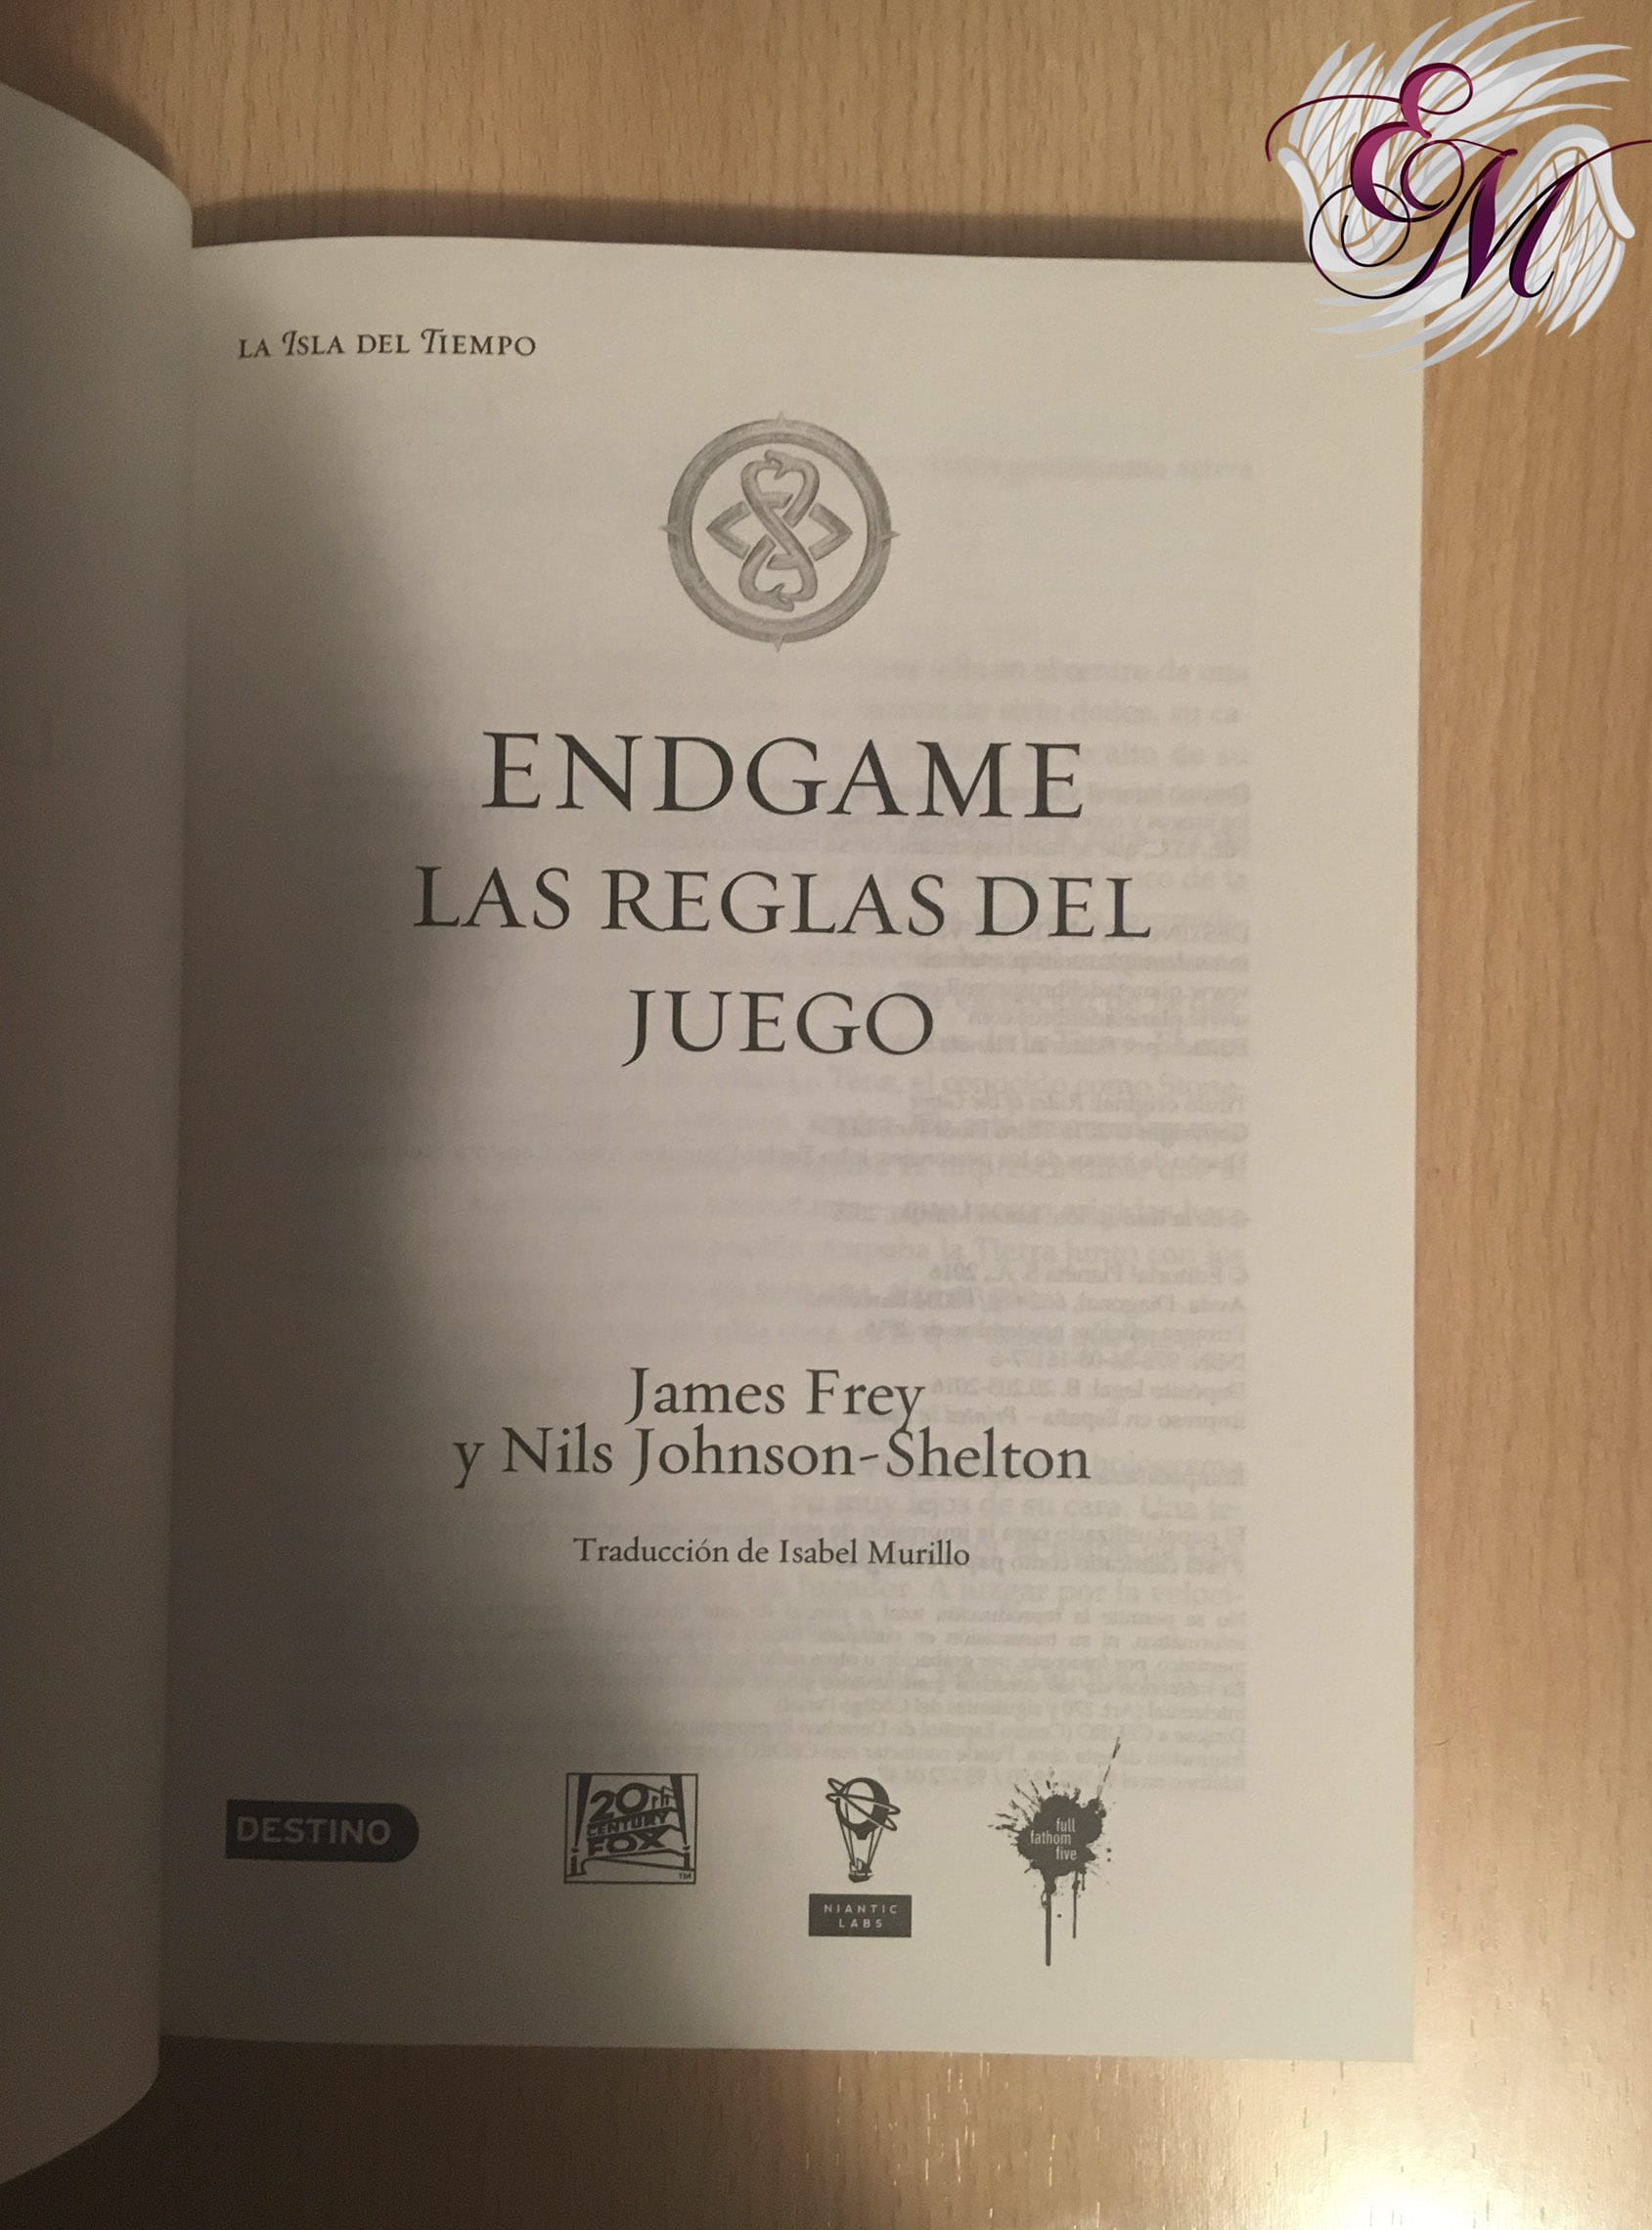 Endgame 3: Las reglas del juego, de James Frey - Reseña